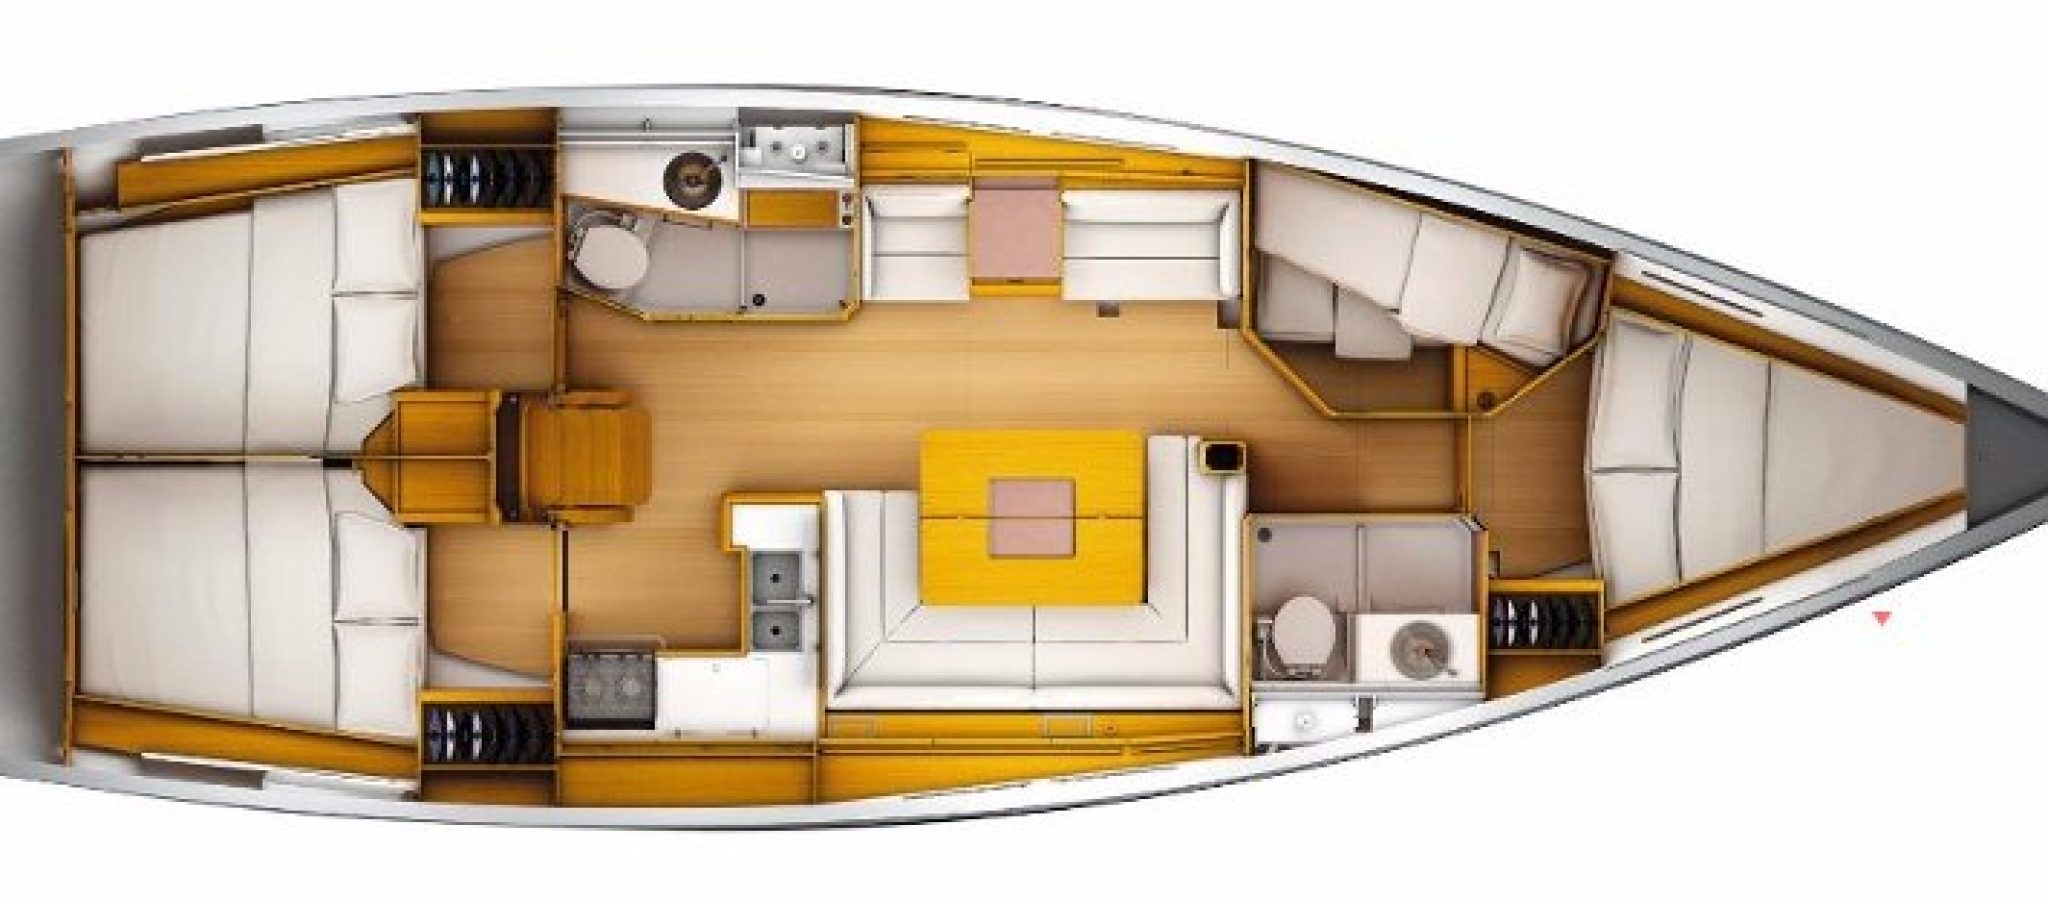 Floor plan image for yacht Sun Odyssey 449 - RAVEL